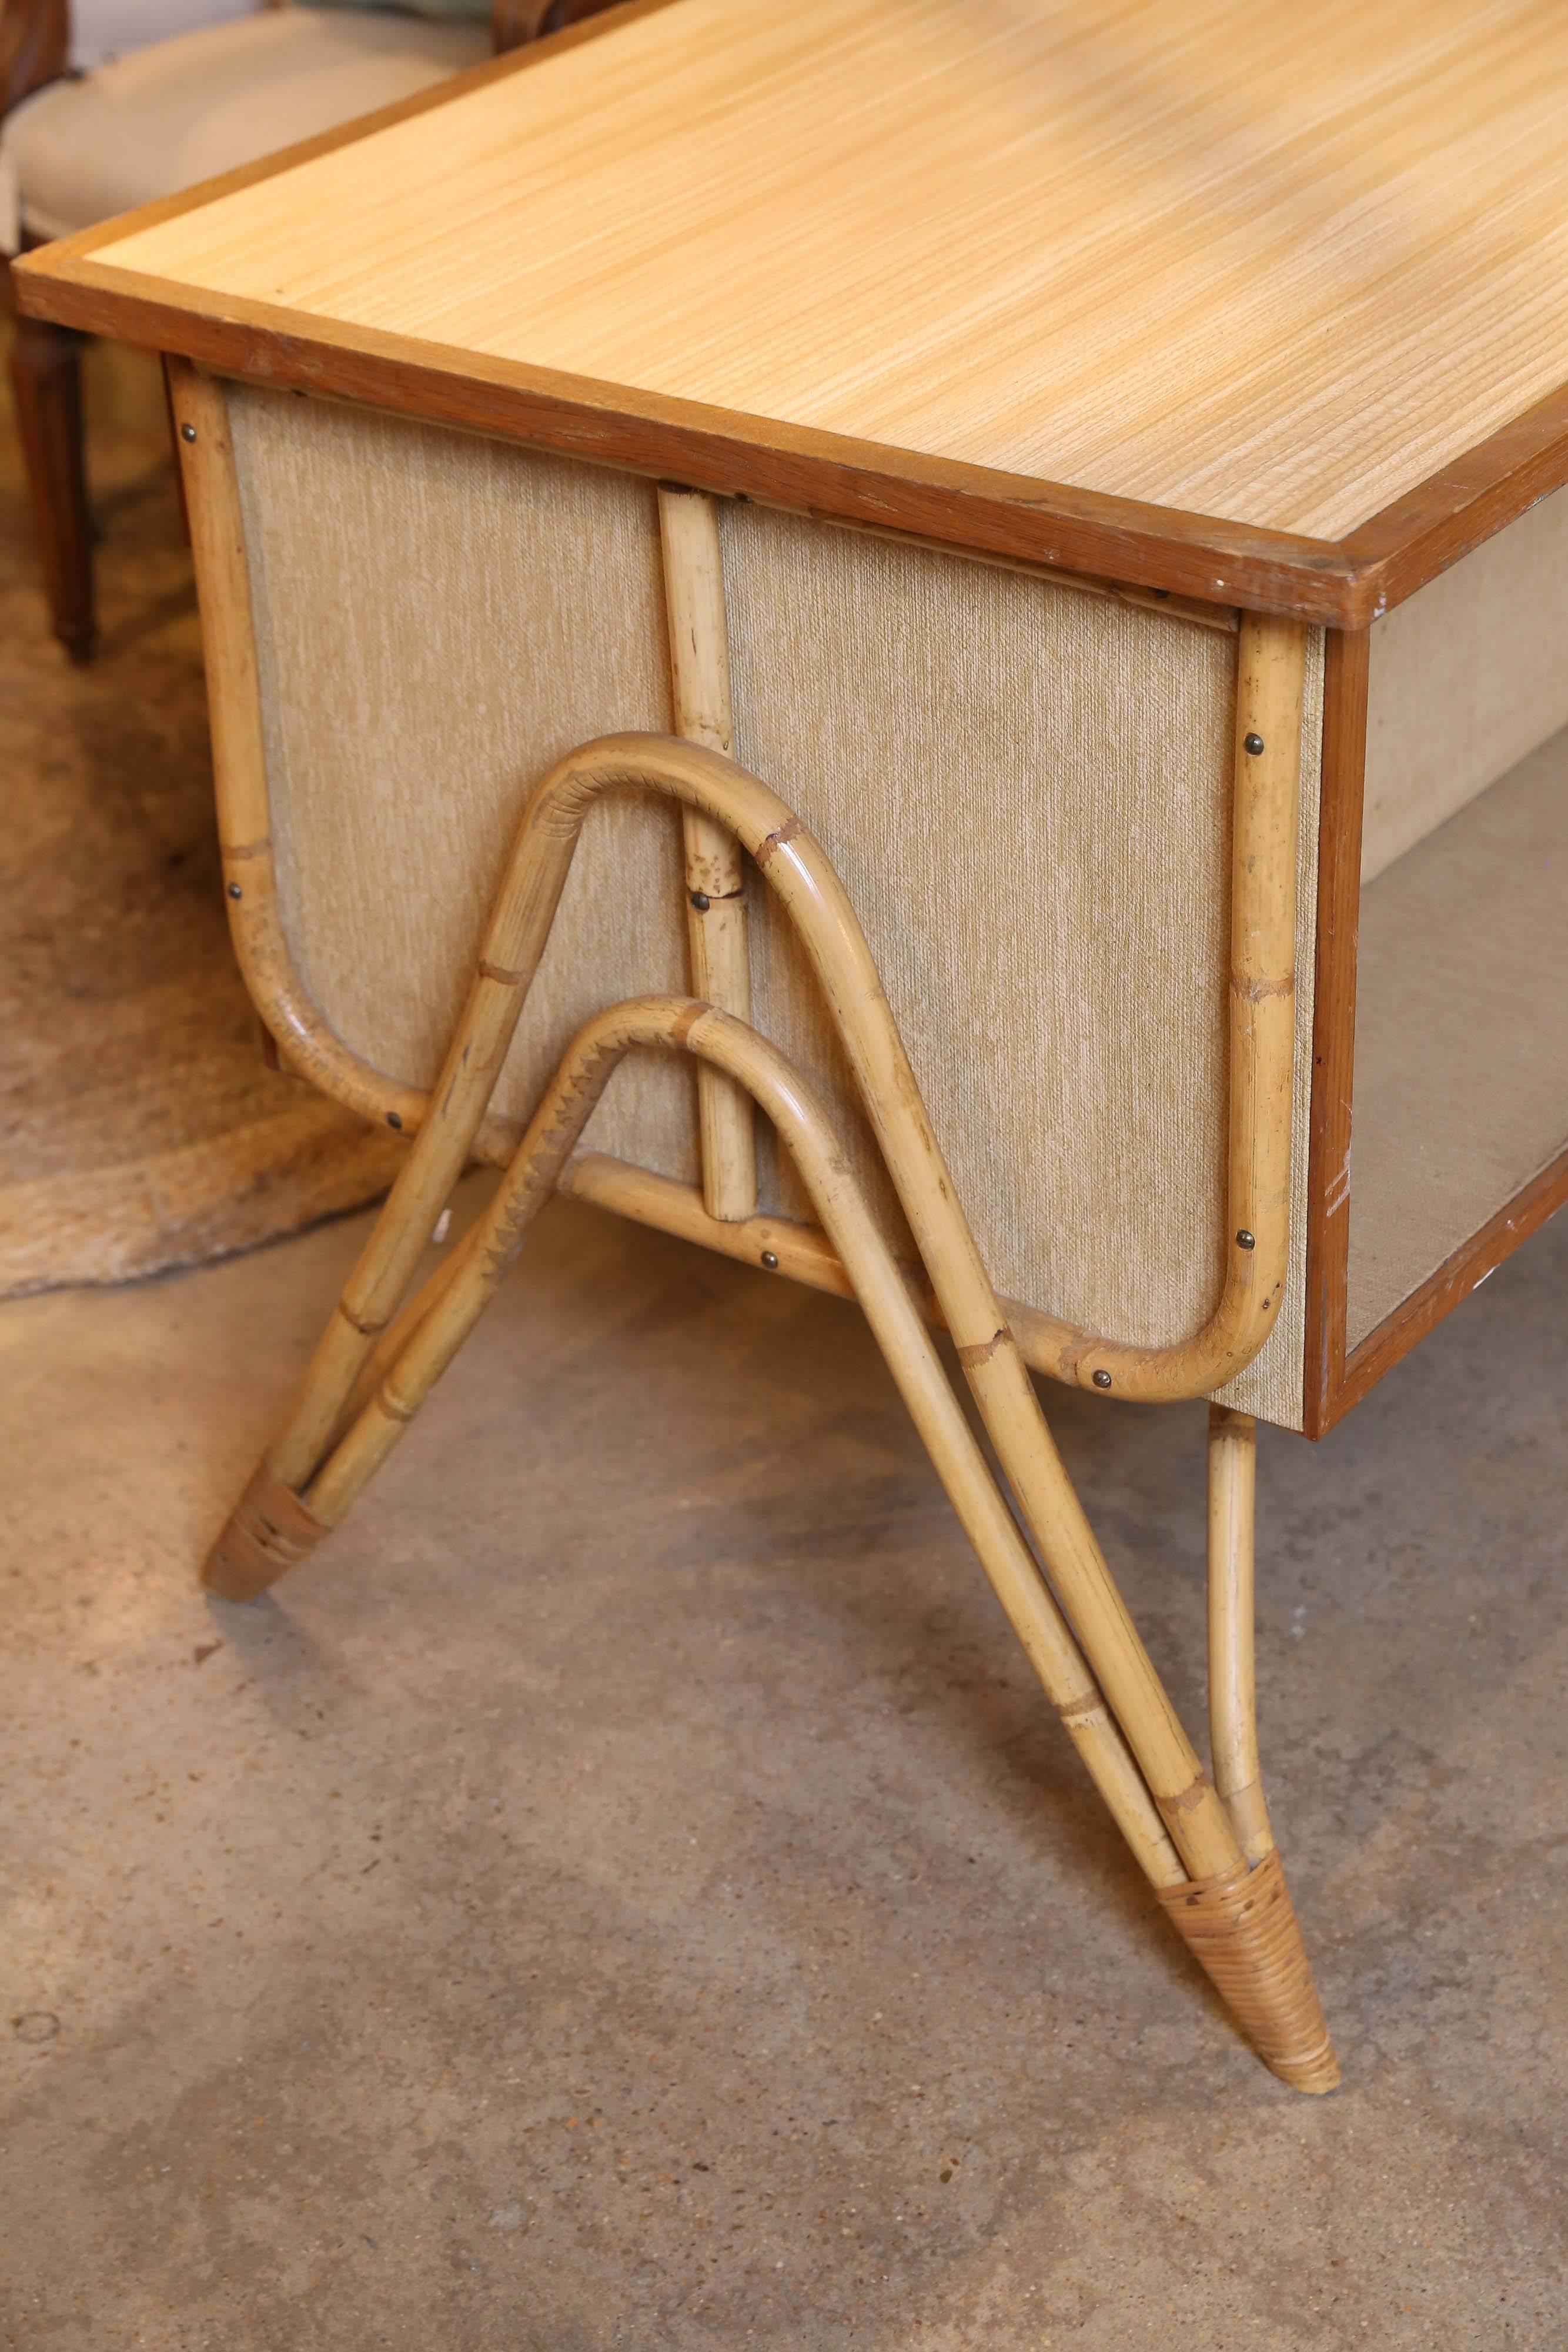 Un petit et charmant bureau et une chaise en bambou à trois tiroirs provenant de France. Le bureau est construit en bois et en panneaux de fibres avec des pieds et des garnitures en bambou. Le plateau est en stratifié grain de bois garni de bois,